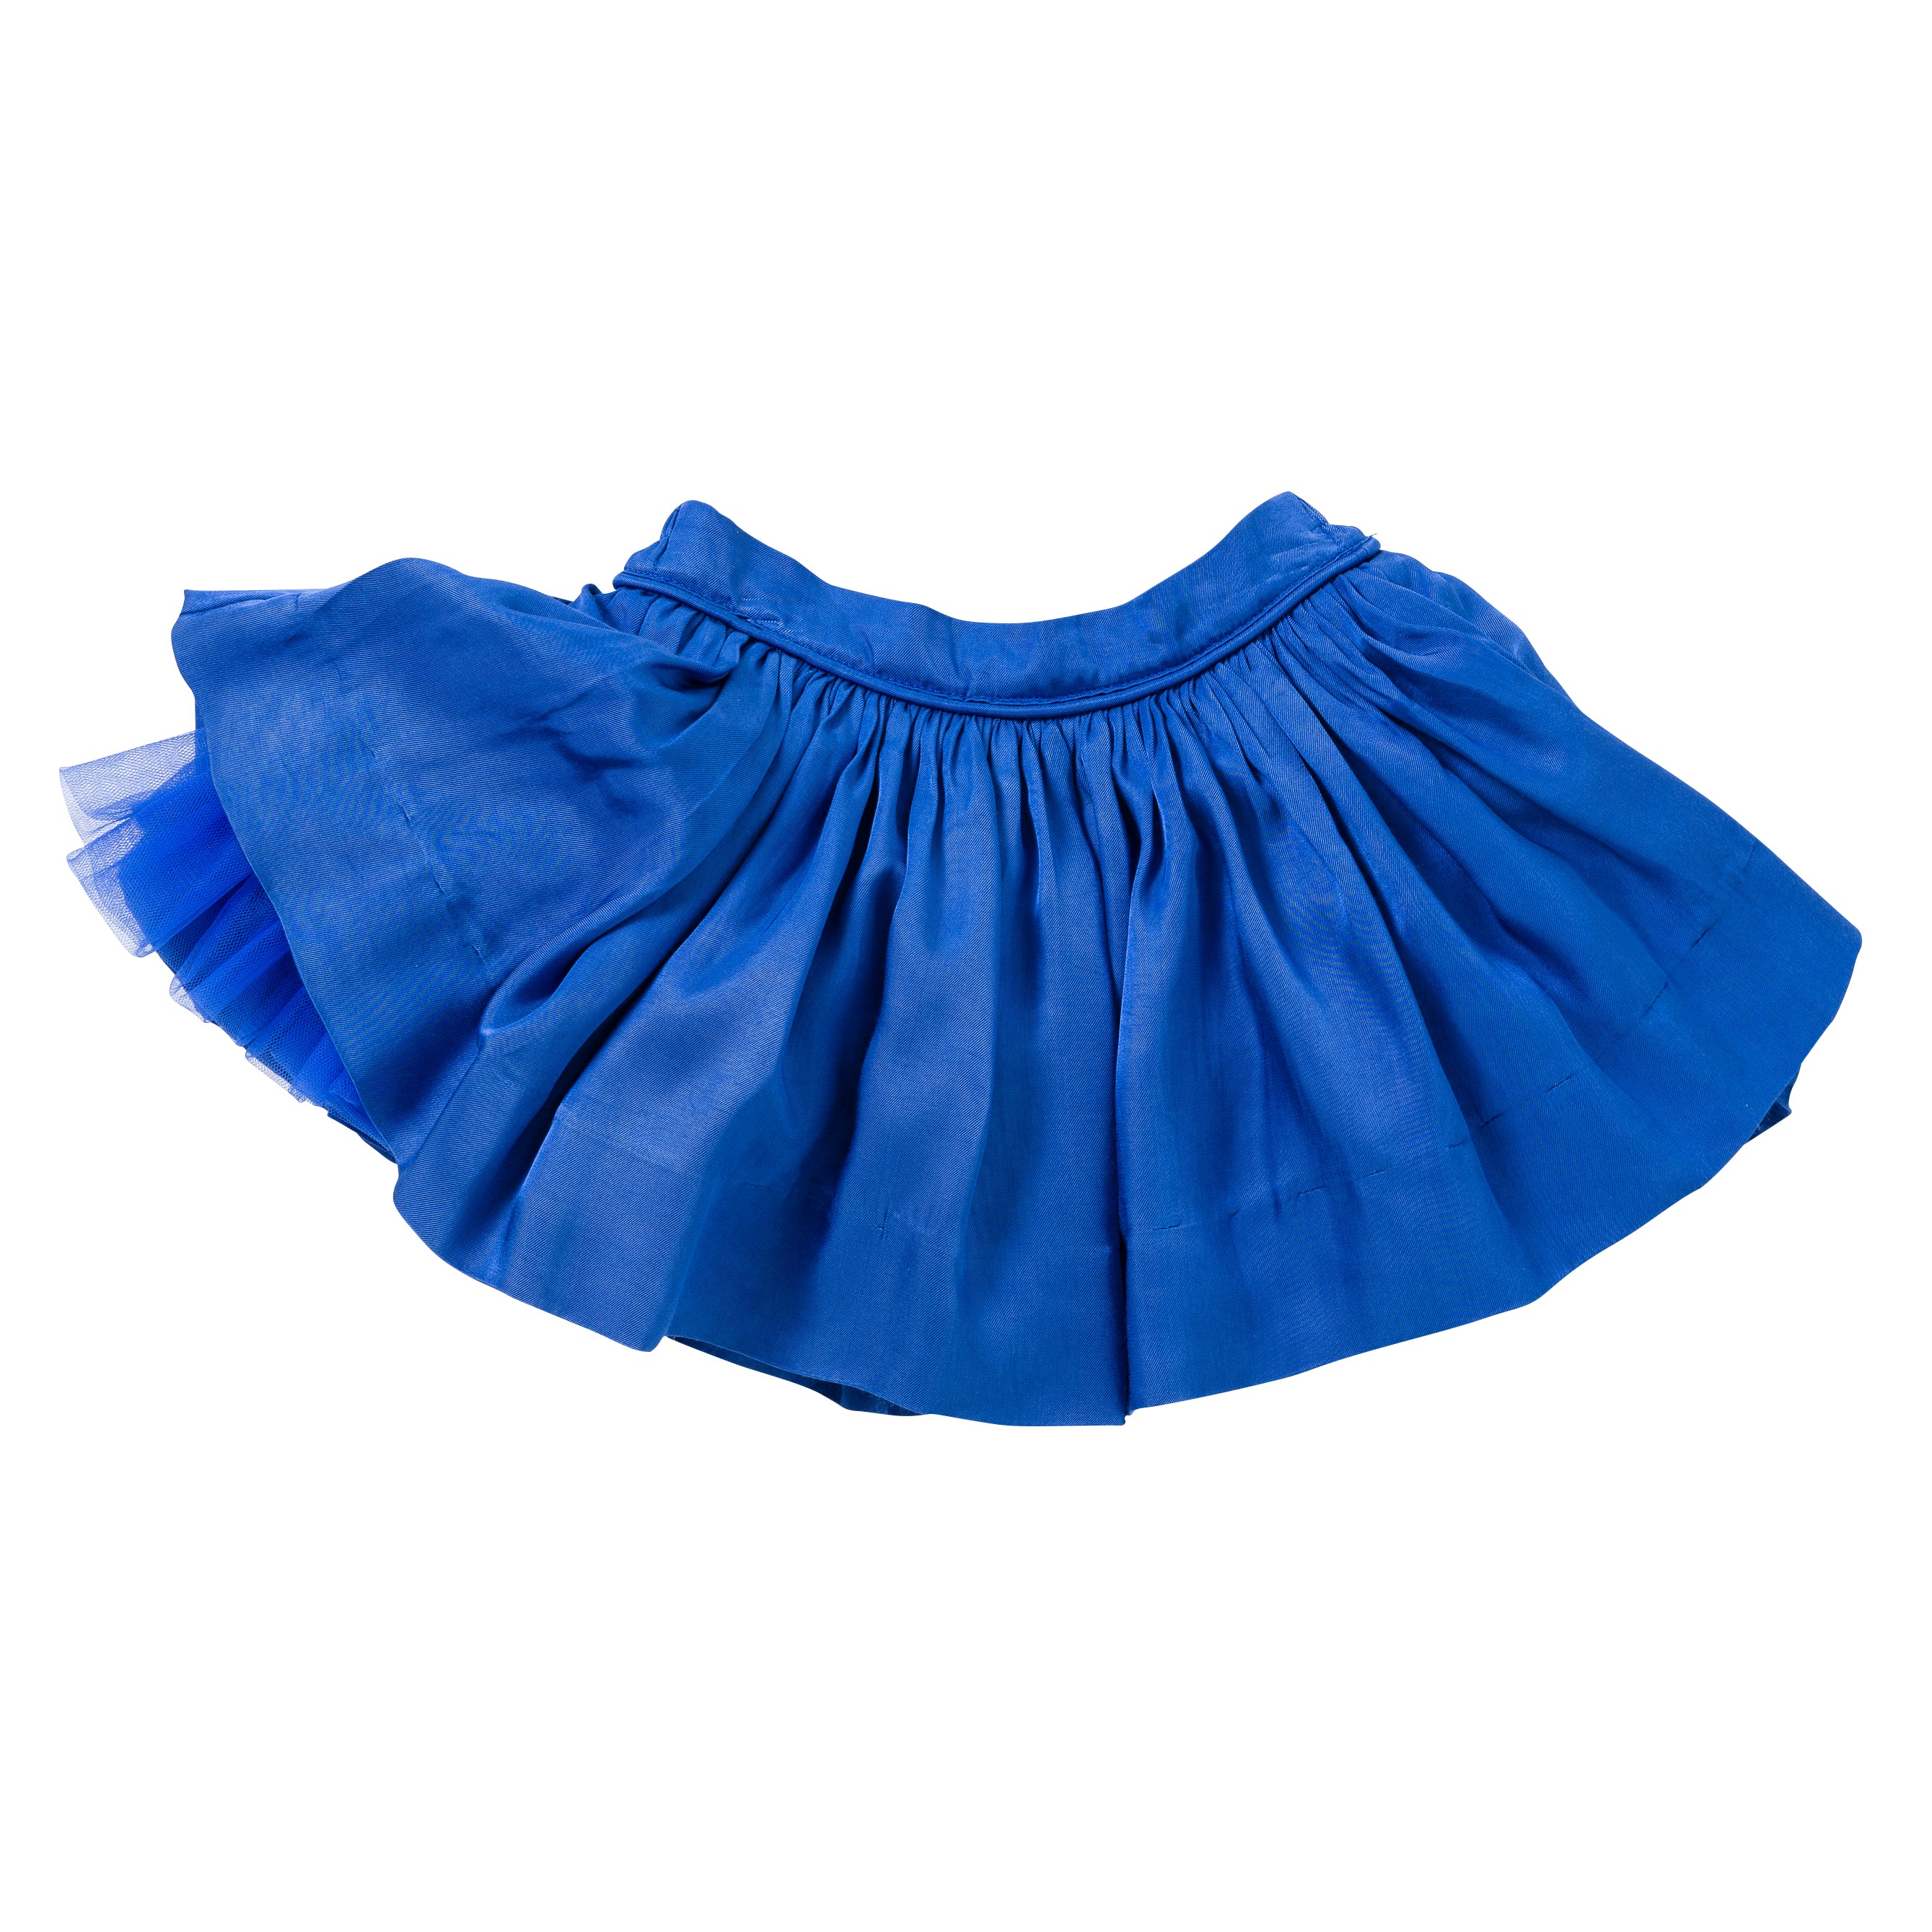 Pocket Skirt in Blue